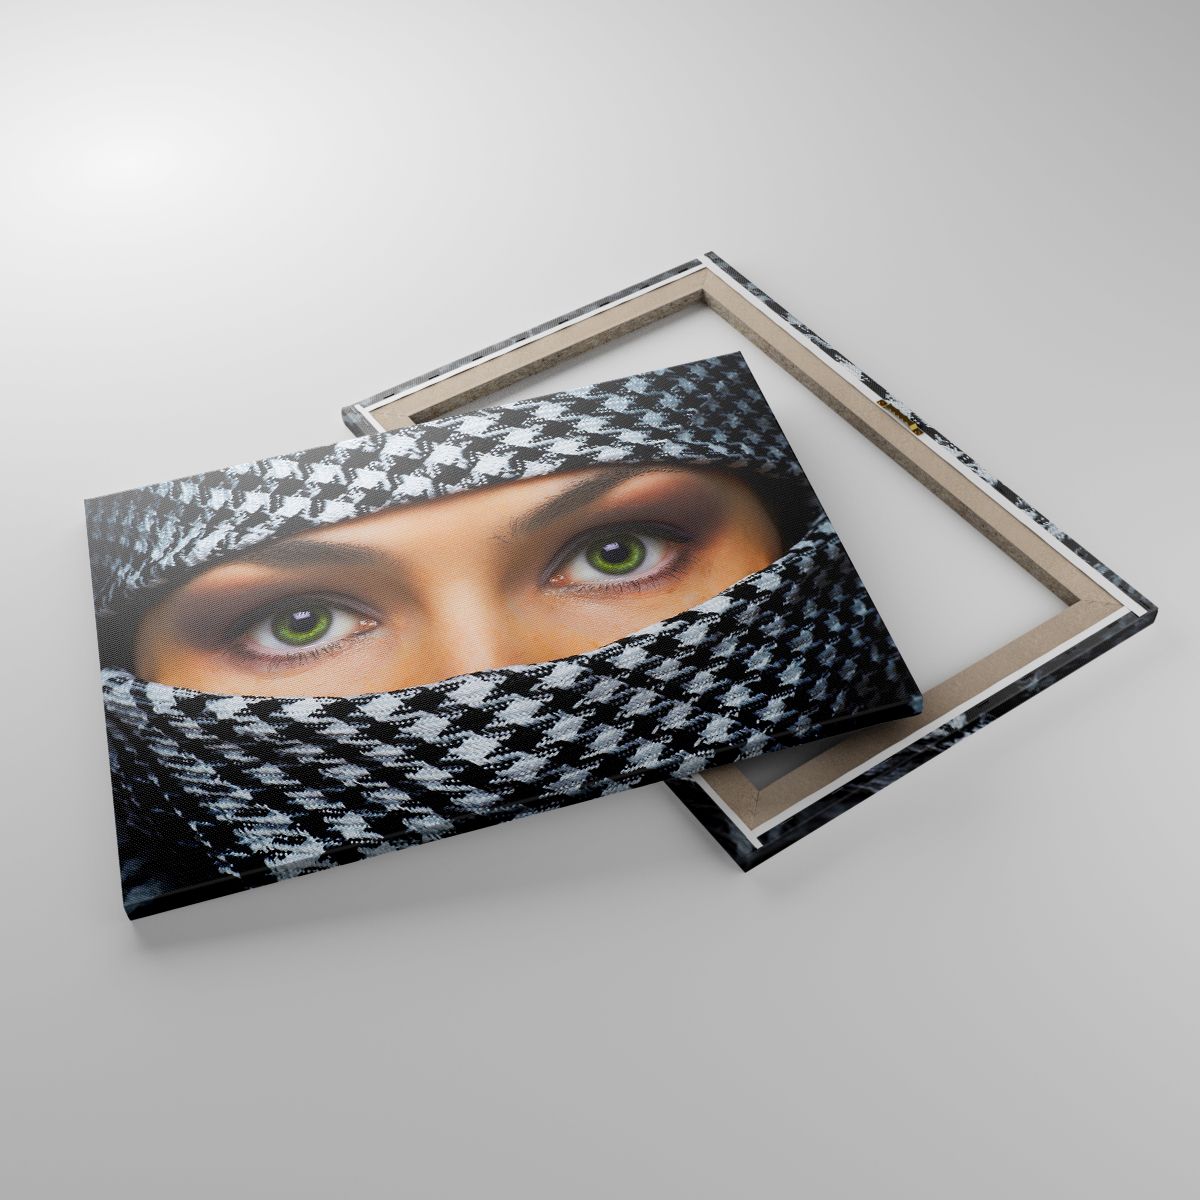 Leinwandbild Frau, Leinwandbild Augen, Leinwandbild Kultur, Leinwandbild Religion, Leinwandbild Muslimische Burka